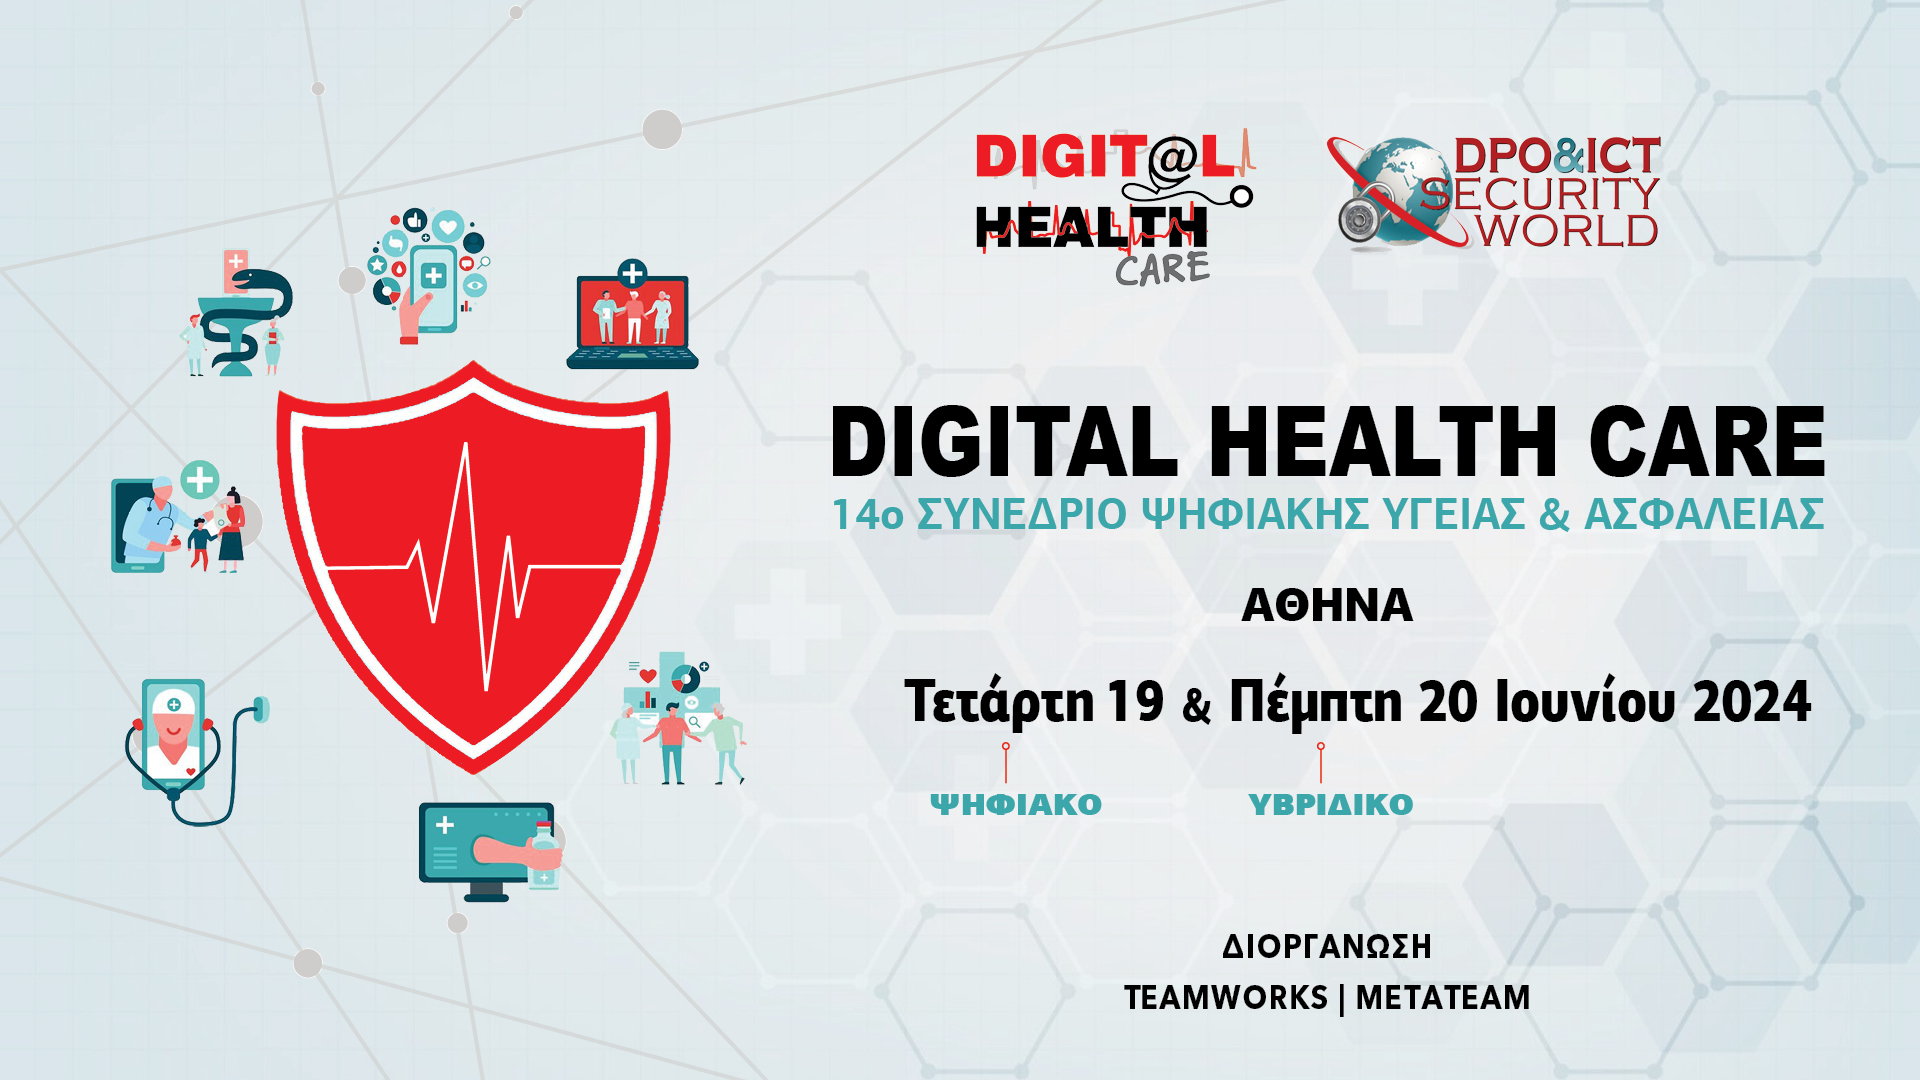 Ξεκινάει το 14ο Συνέδριο Ψηφιακής Υγείας & Ασφάλειας “Digital Health Care “ στις 19 Ιουνίου με υποστήριξη και συμμετοχή της ΕΕΛΛΑΚ